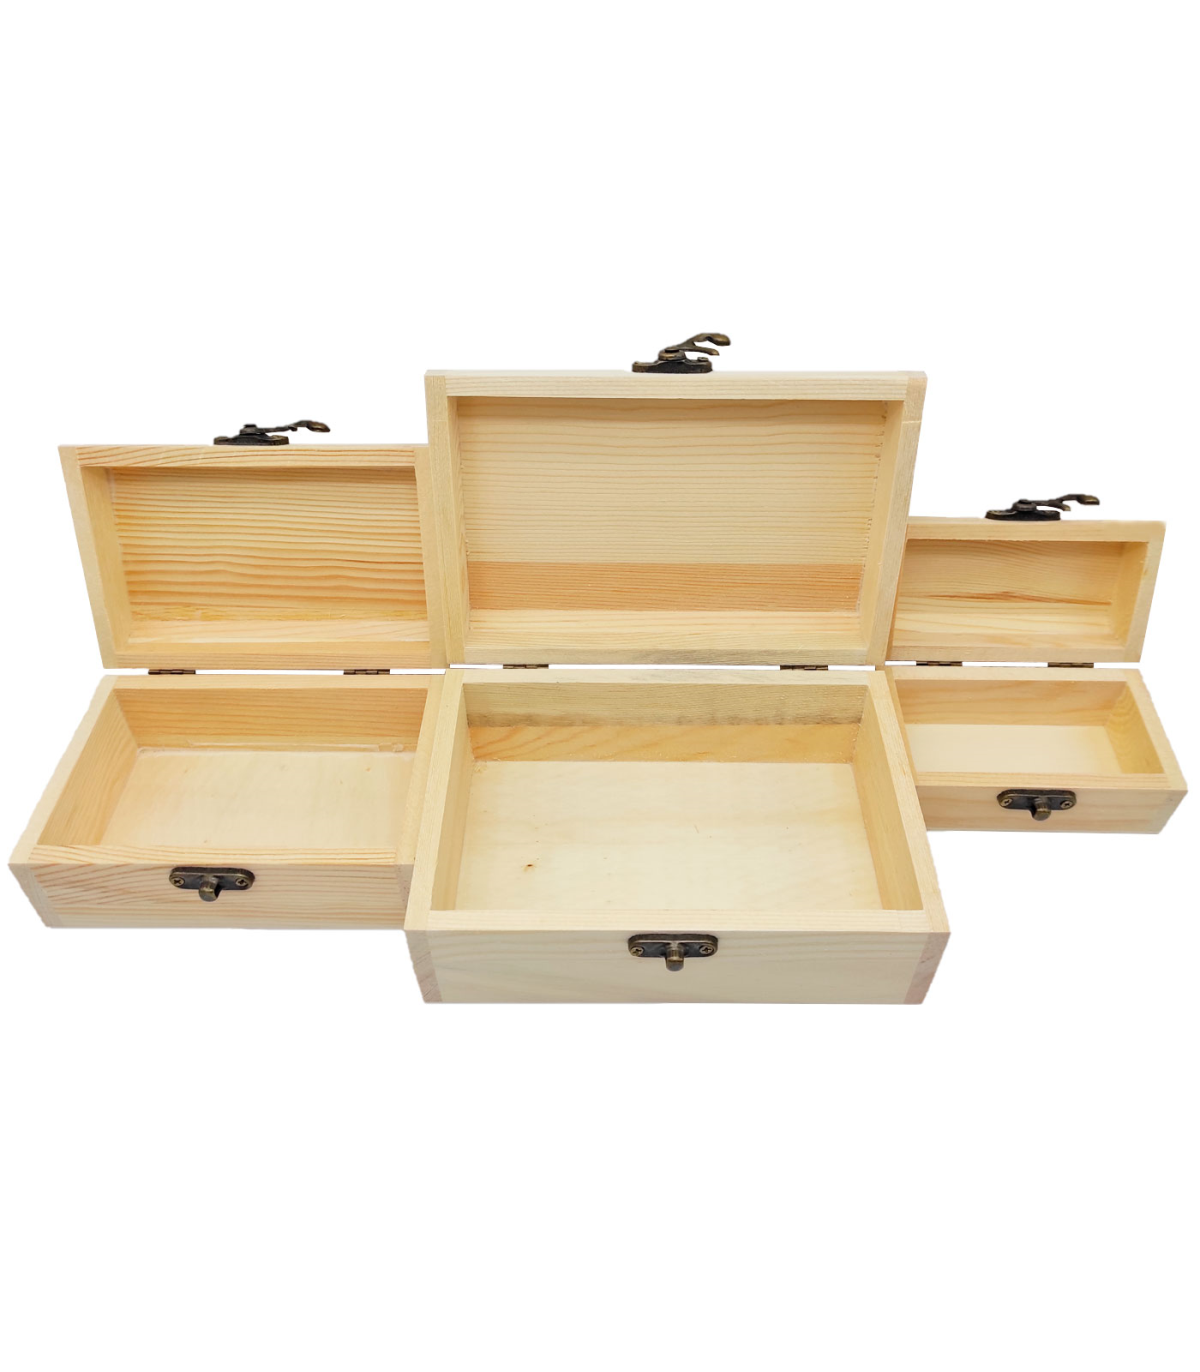 Conjunto de 3 cajas de madera, forma de baúl, 9,5 x 25 x 14 cm, juego cajas  rectangulares decorativas, cierre metálico frontal